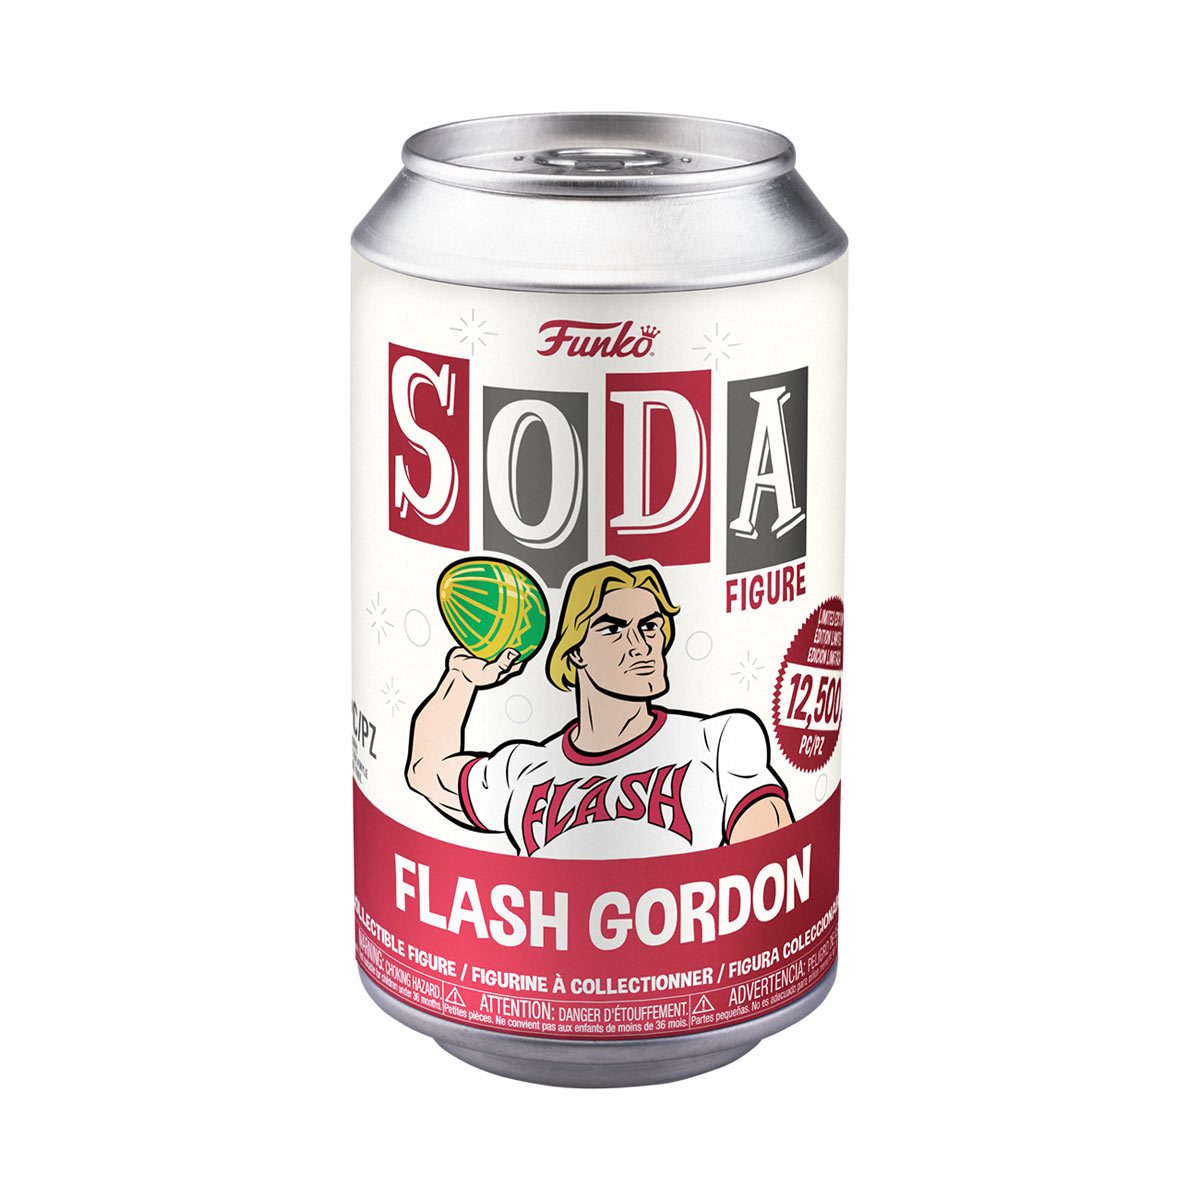 Funko Soda: Flash Gordon